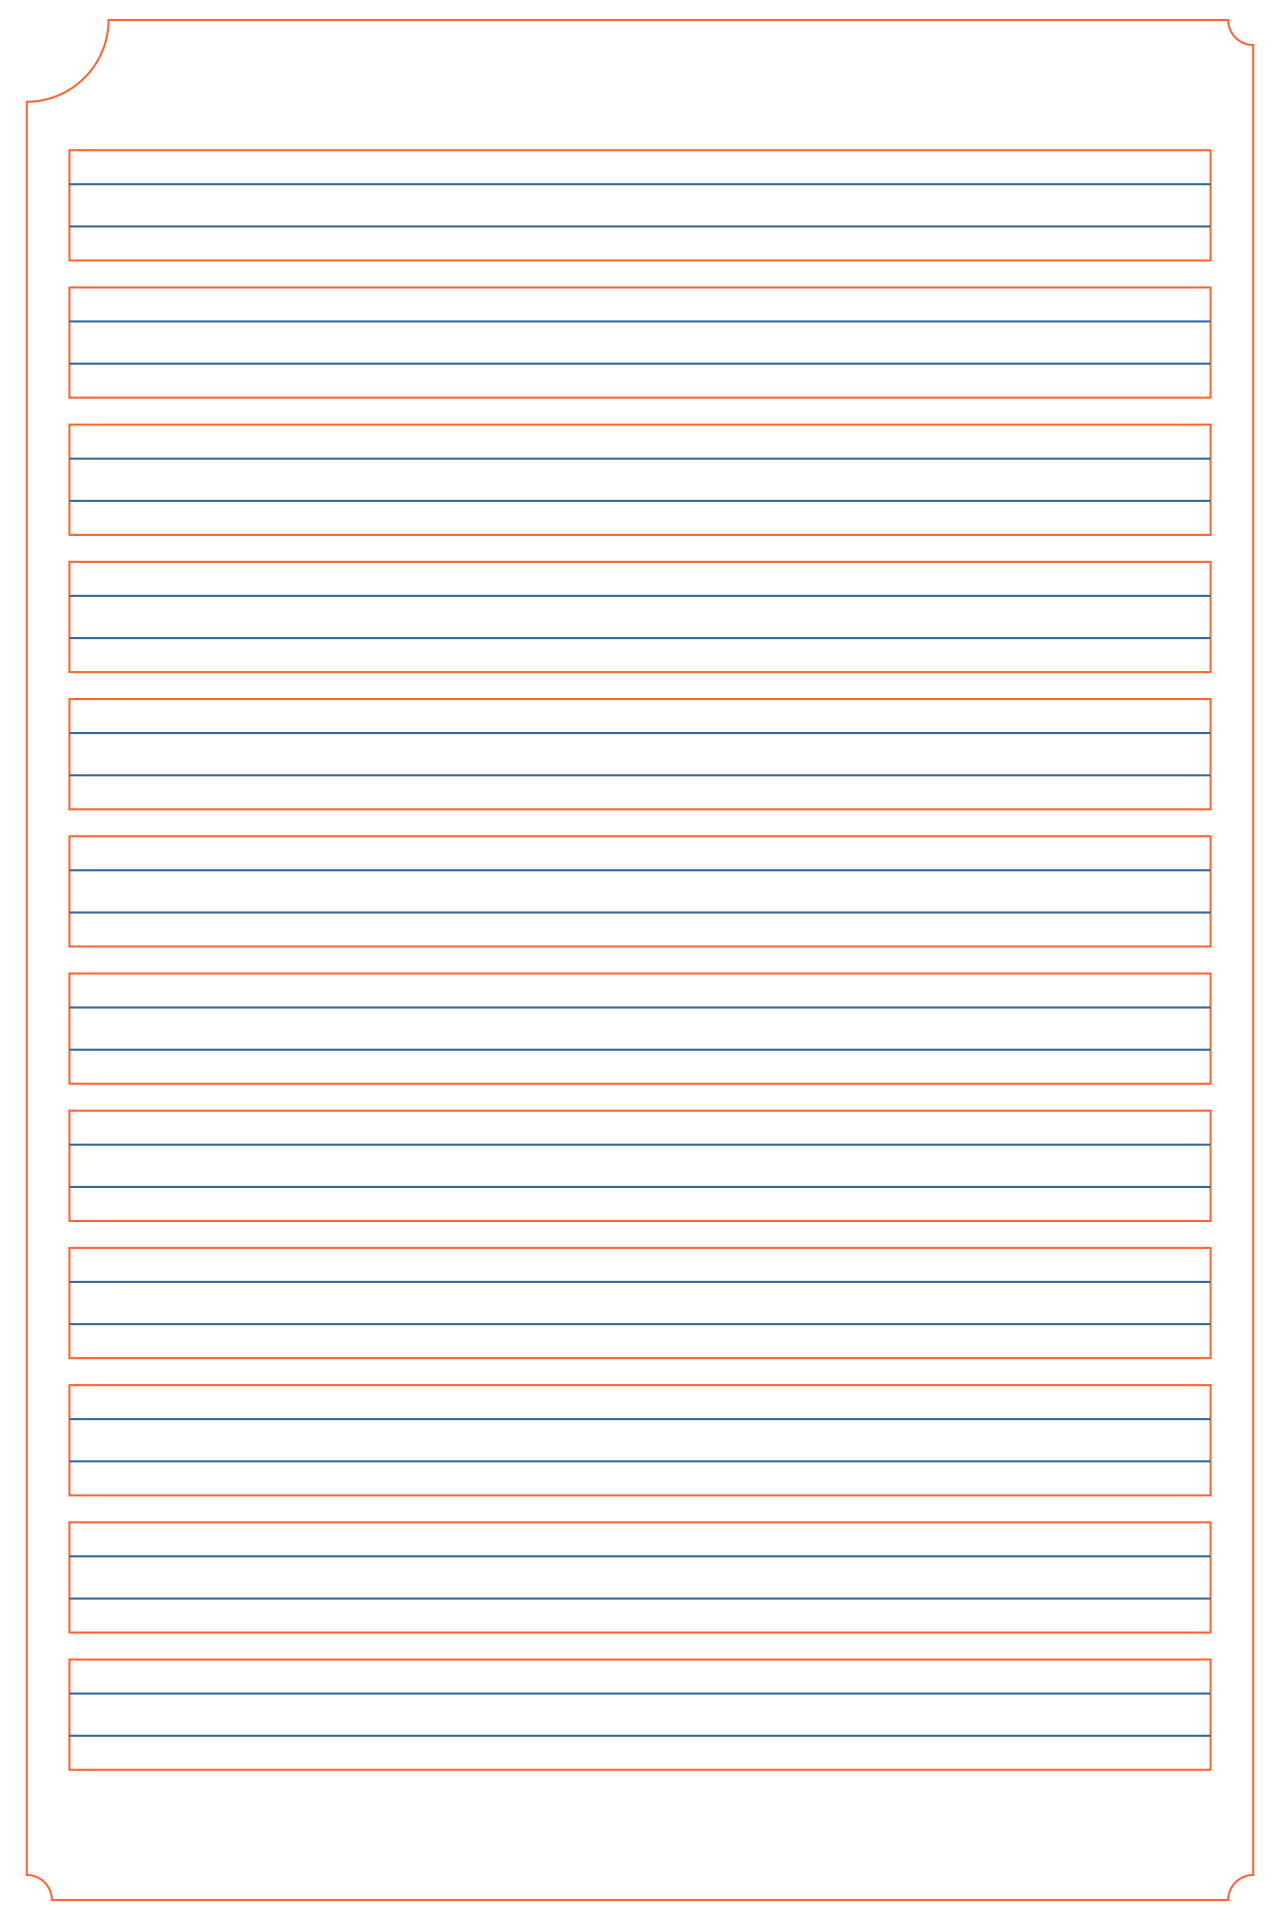 Free Printable Blank Handwriting Worksheets Pdf